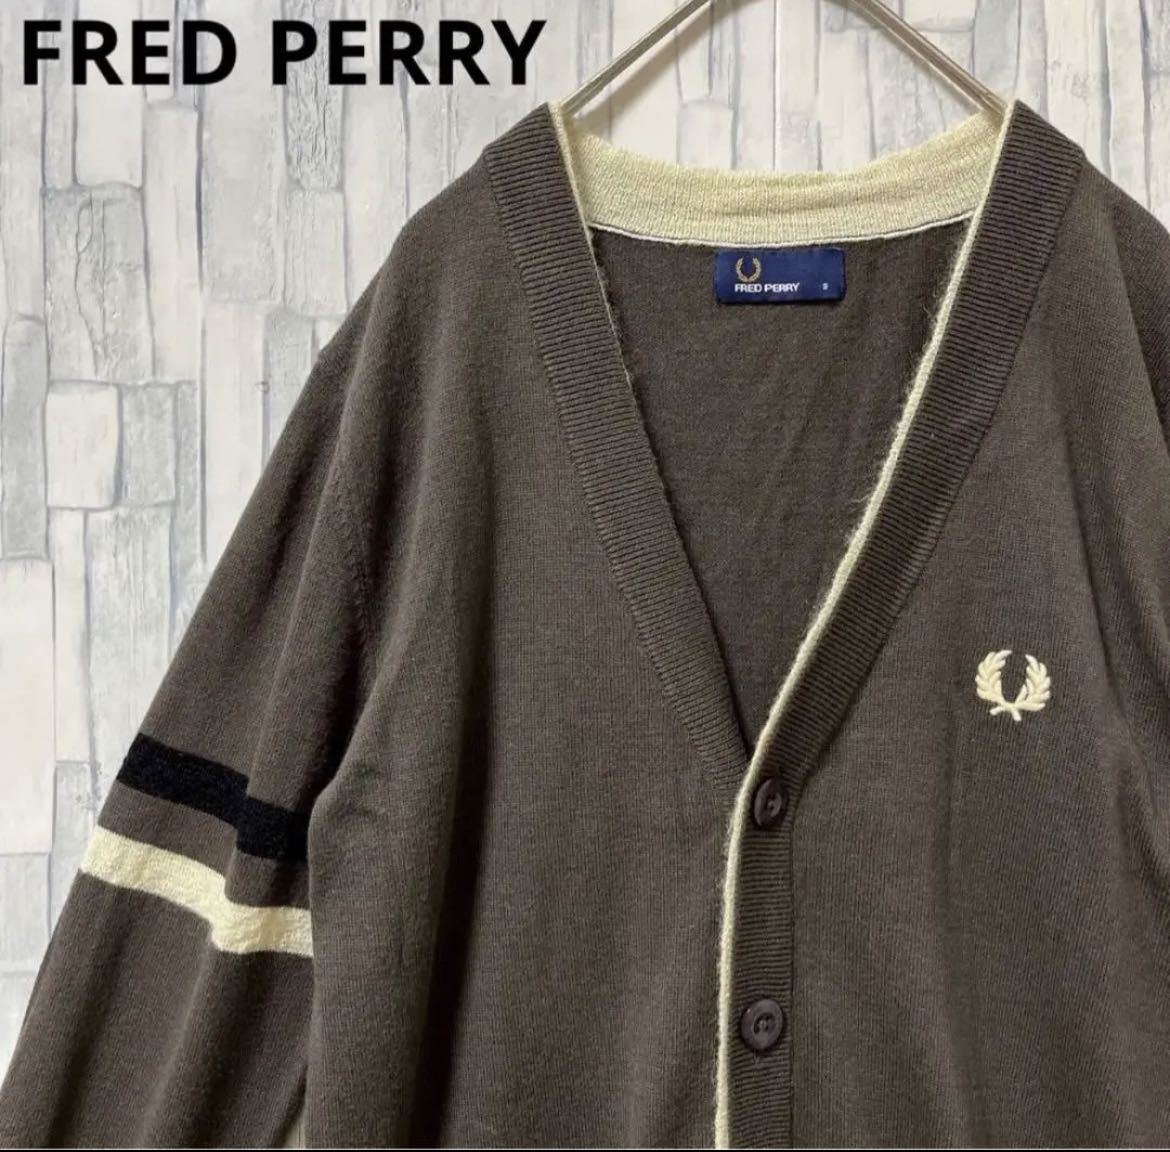 FRED PERRY フレッドペリー モヘア混 ニット カーディガン サイズSダークブラウン 長袖 ワンポイントロゴ 刺繍ロゴ ボーダー 送料無料